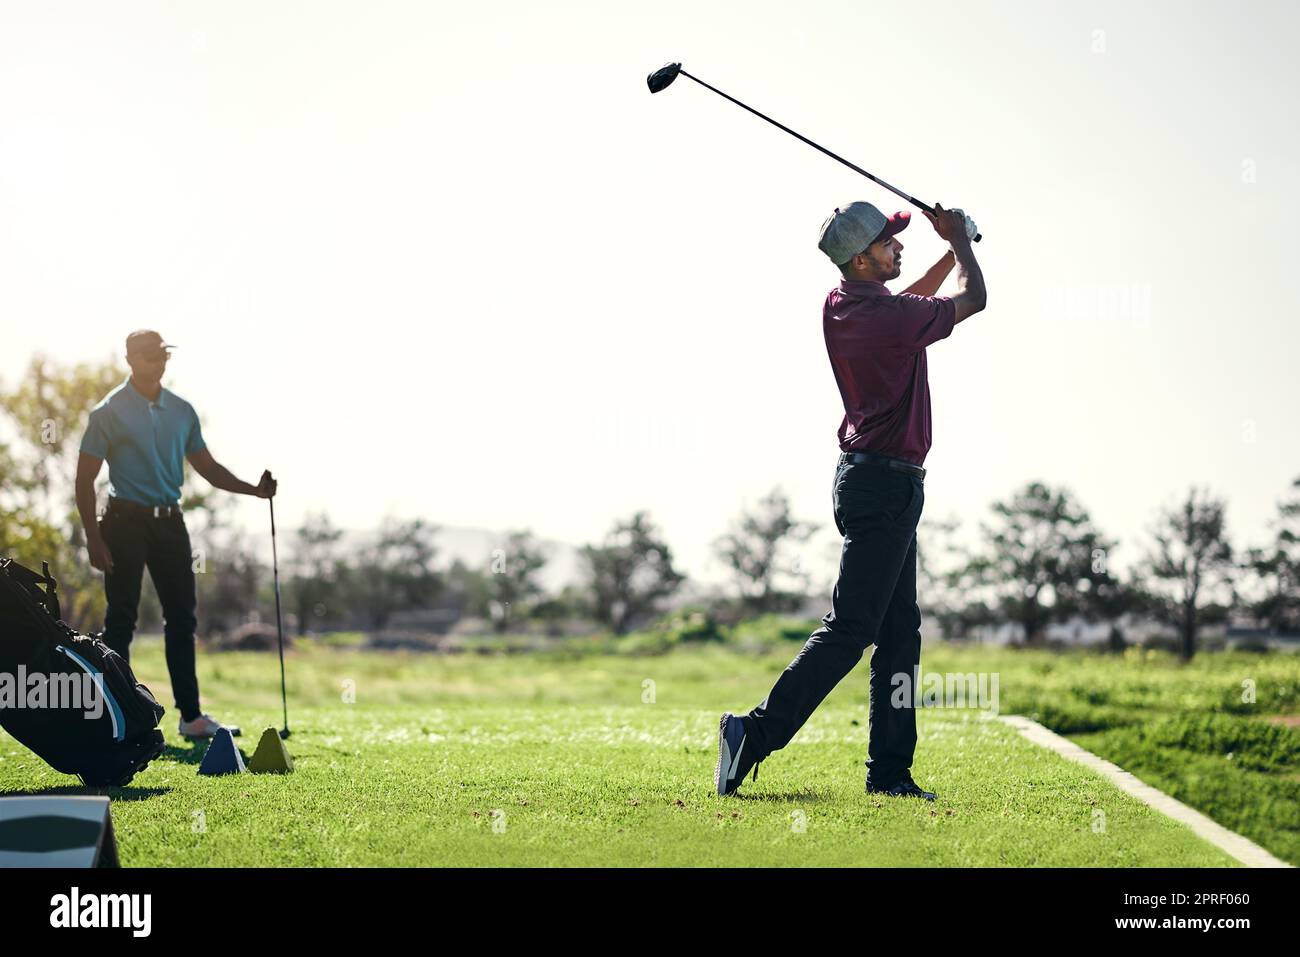 Bien joué. Un jeune golfeur masculin concentré sur le point de balancer et de jouer un tir avec son club de golf à l'extérieur sur un terrain. Banque D'Images